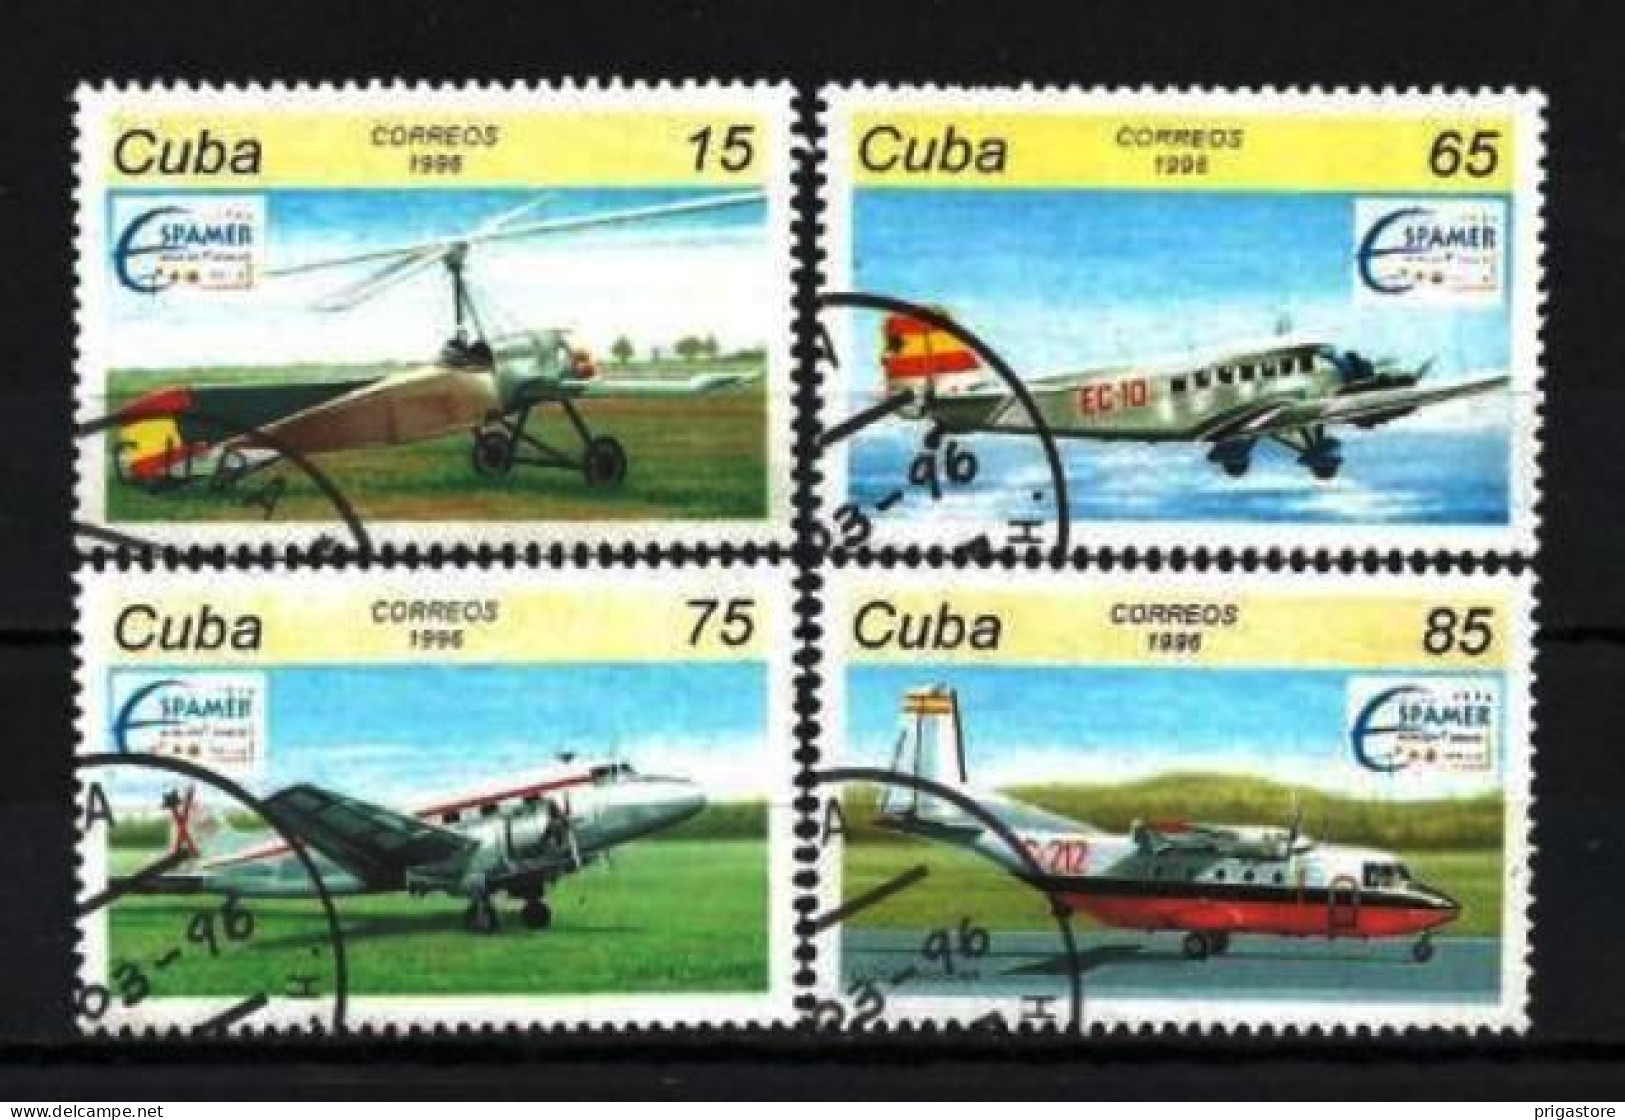 Cuba 1996 Avions (28) Yvert N° 3520 à 3523 Oblitéré Used - Gebraucht